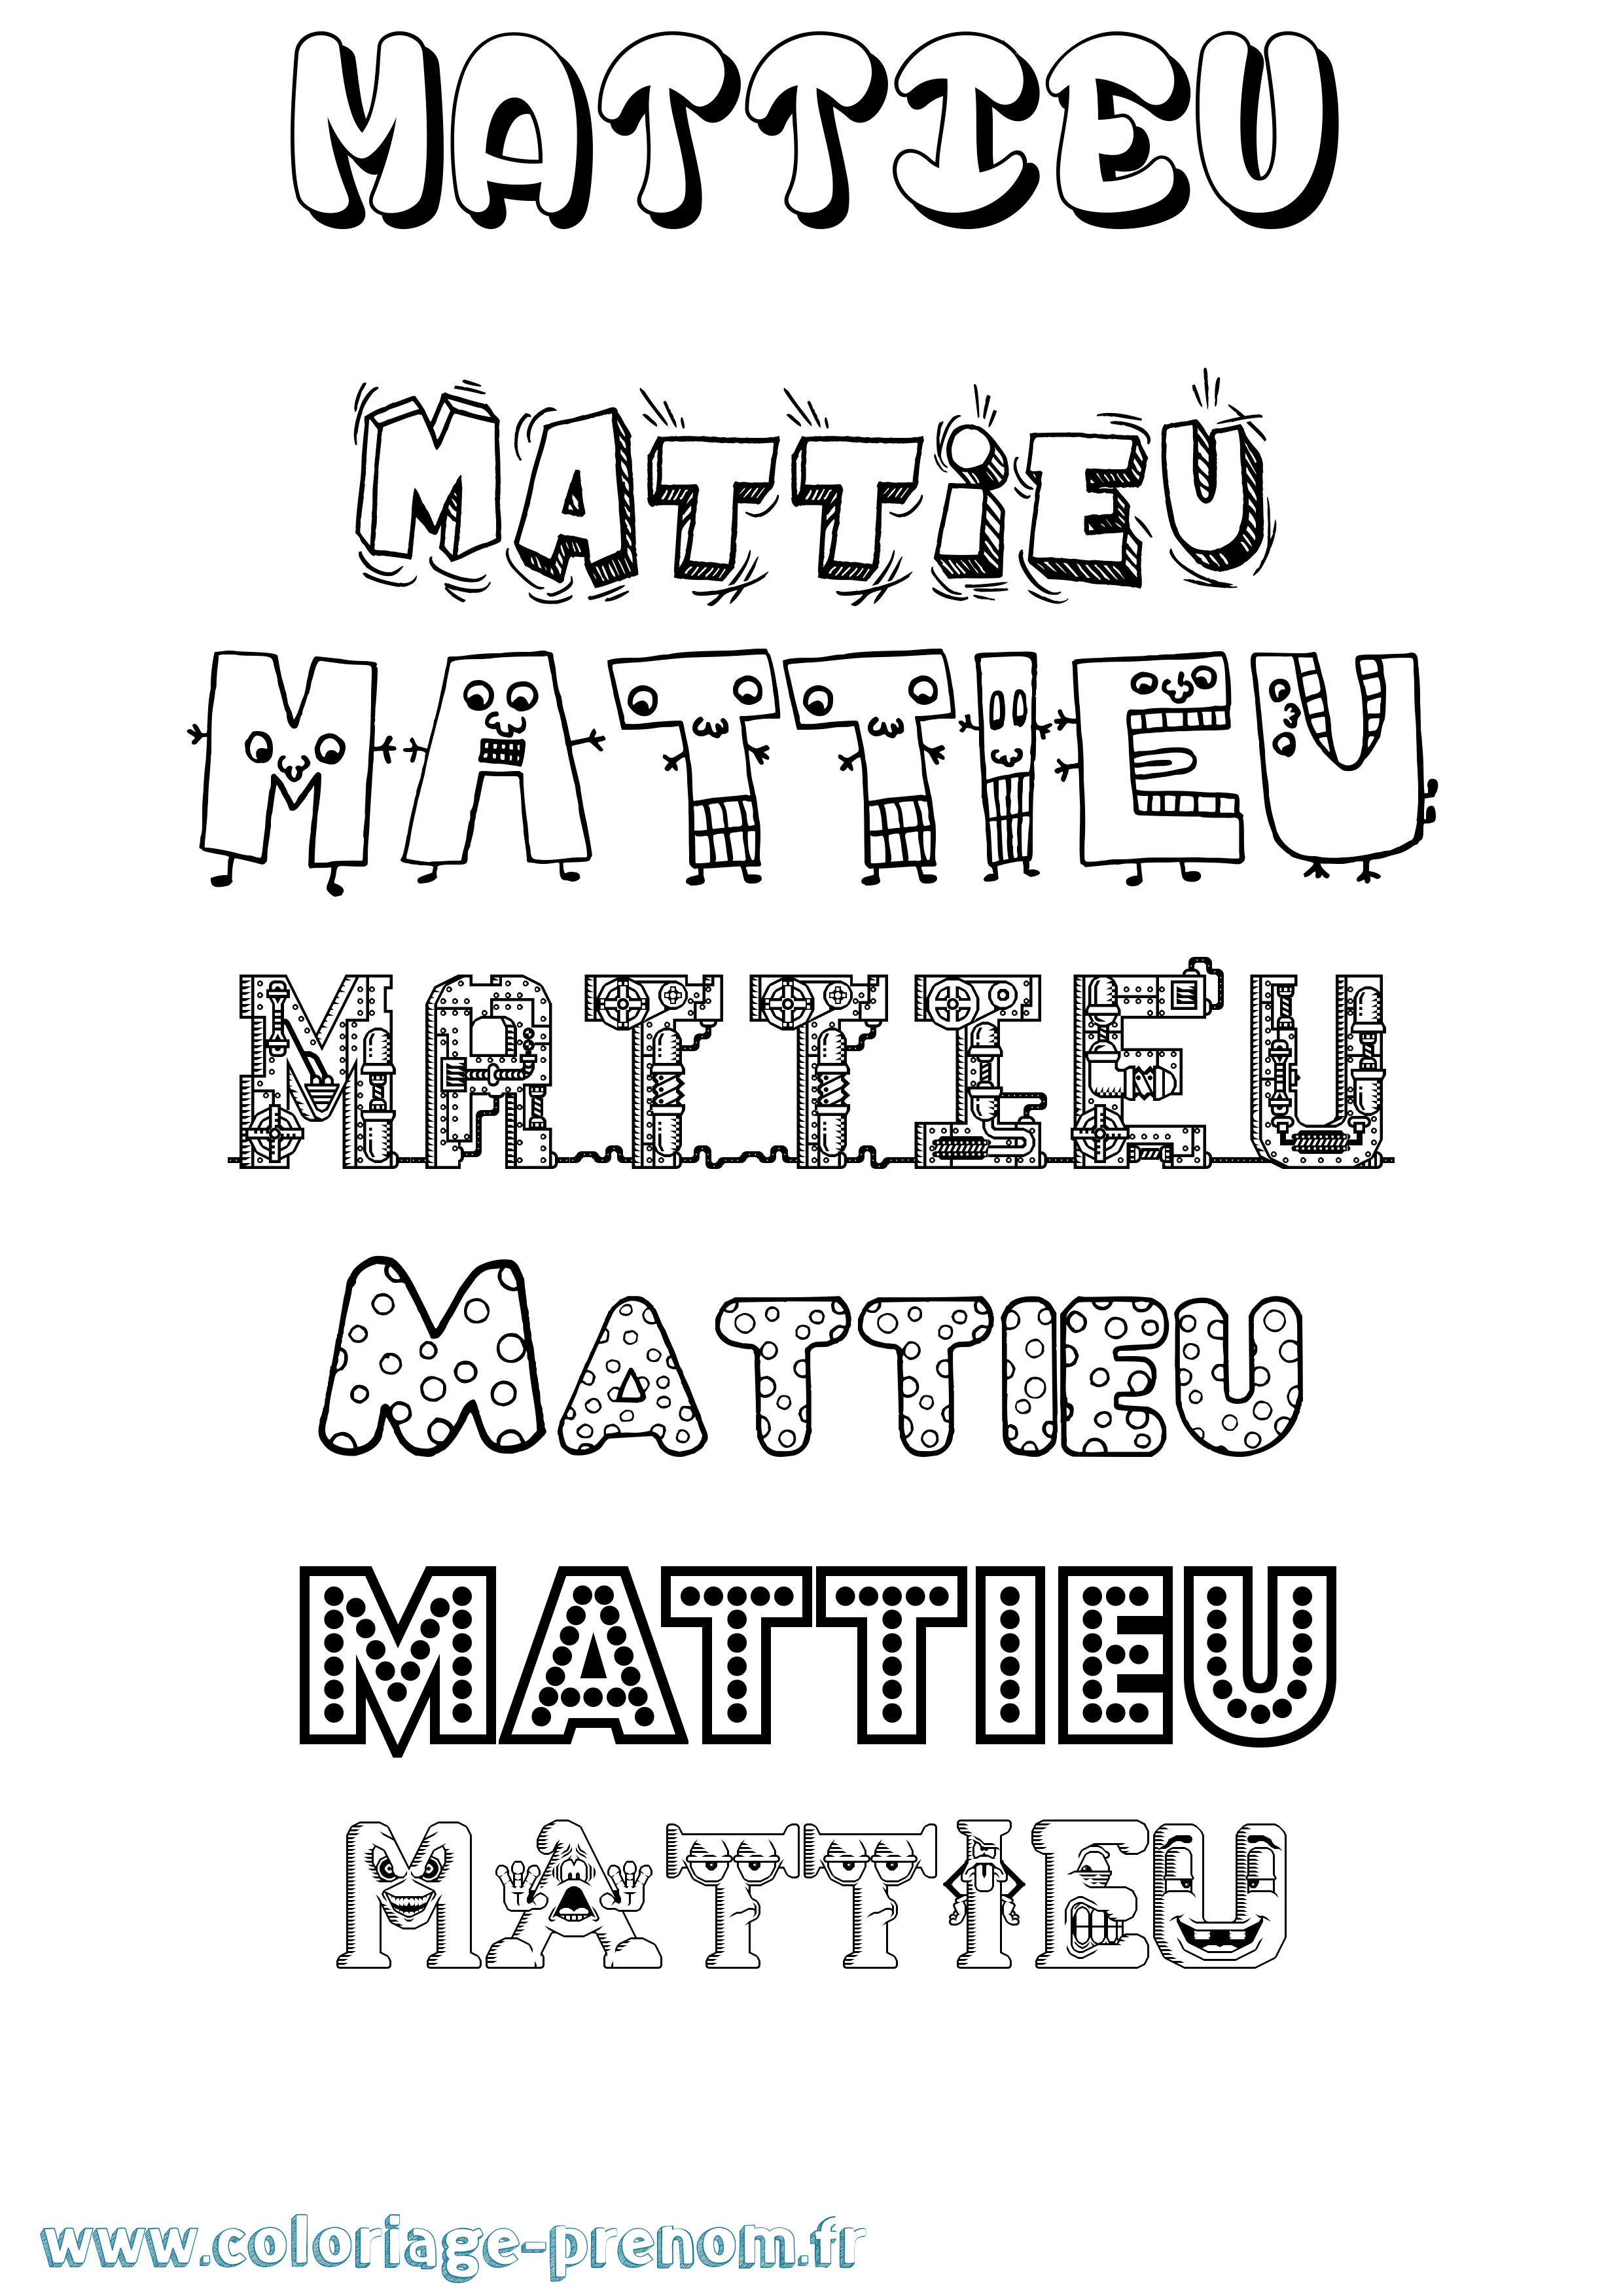 Coloriage prénom Mattieu Fun